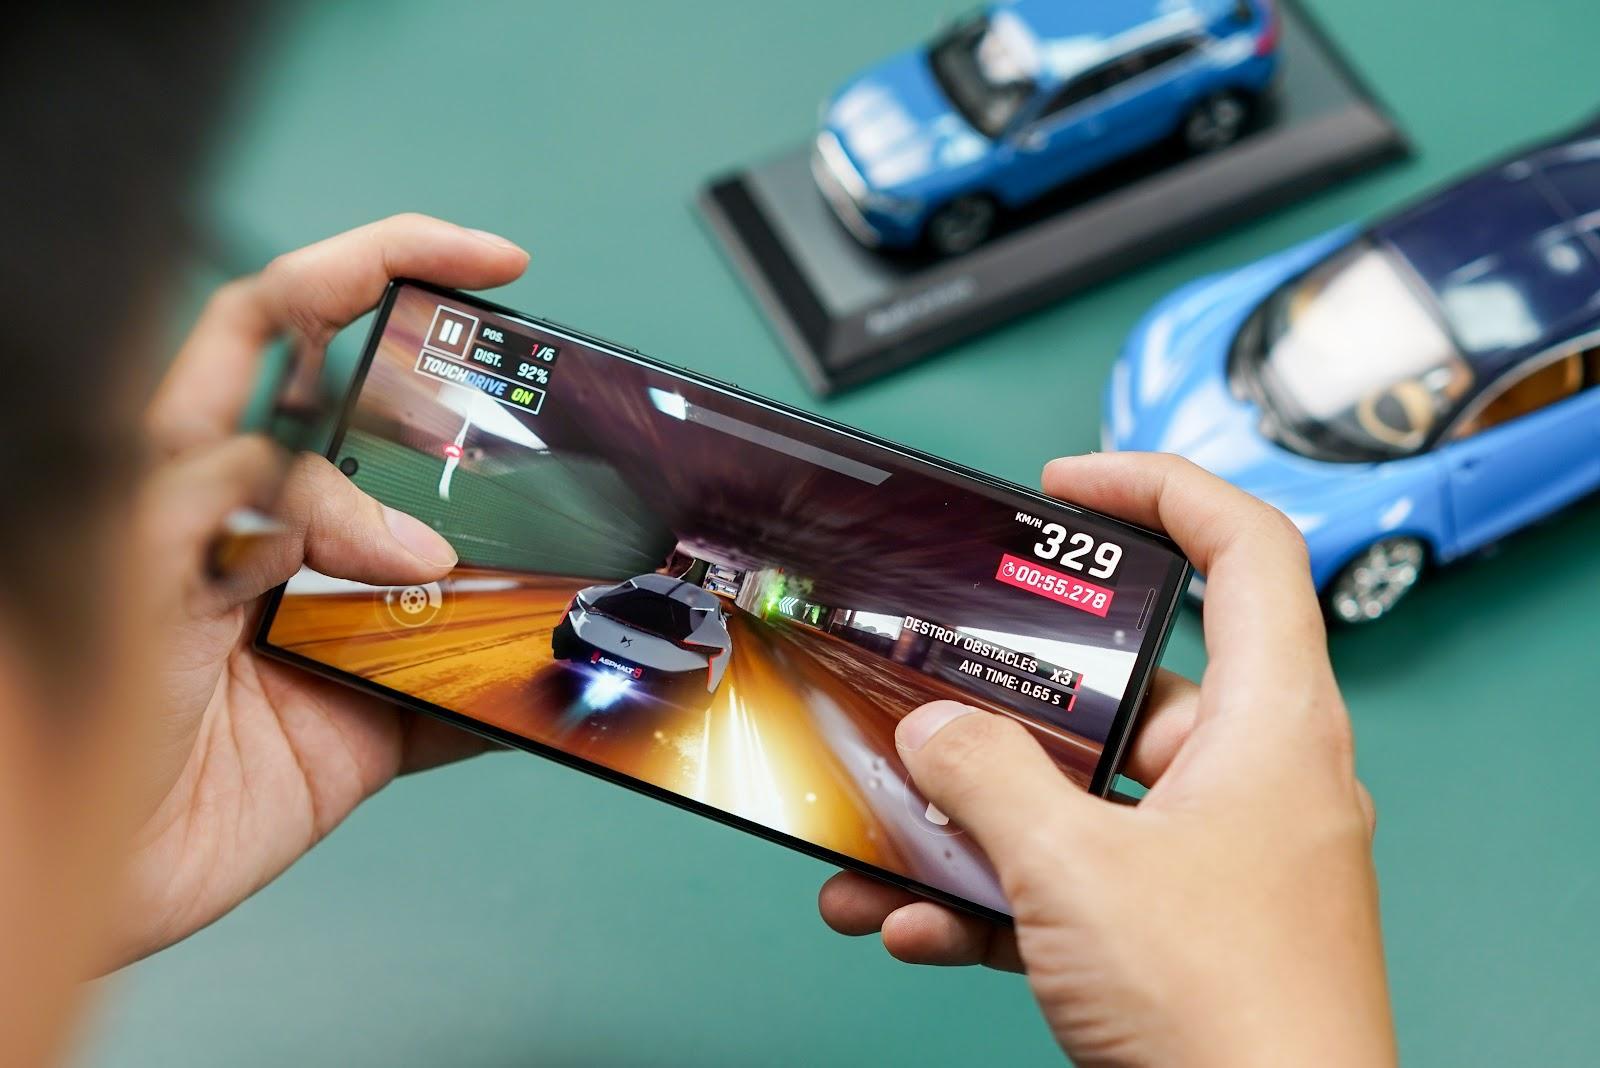 Đột phá công nghệ, nâng tầm hiệu suất - Flagship mới của Samsung giúp tín đồ Galaxy Note 9 thỏa sức làm việc linh hoạt - Ảnh 3.